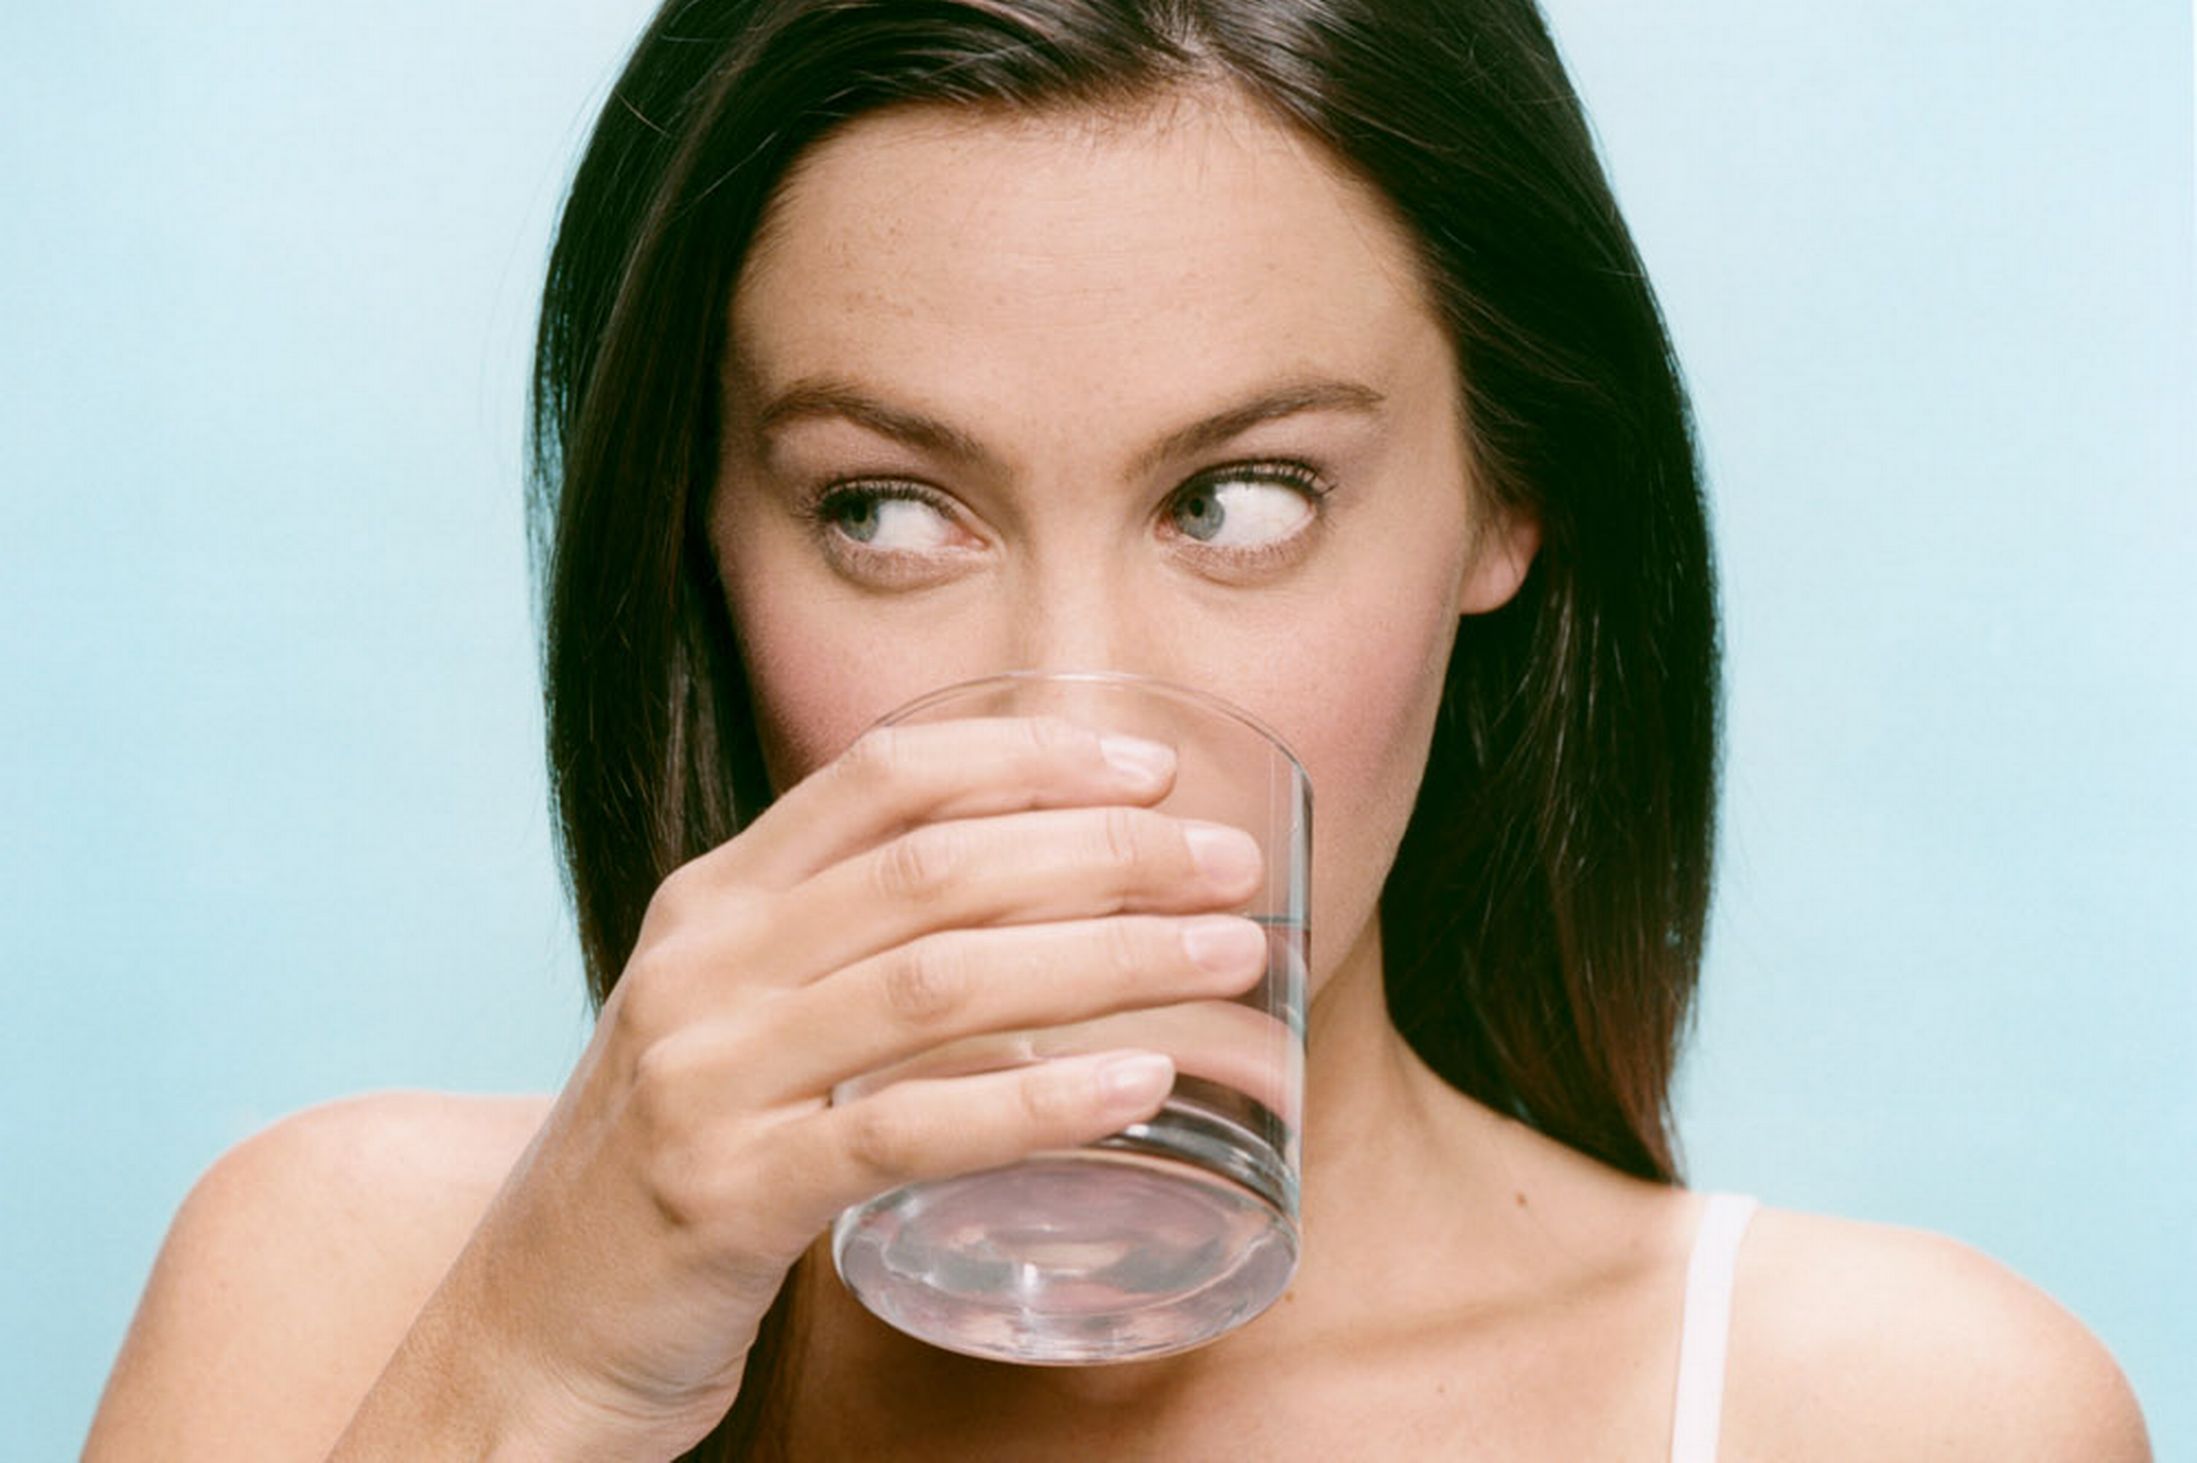 Картинка по теме: Как приучить себя пить воду